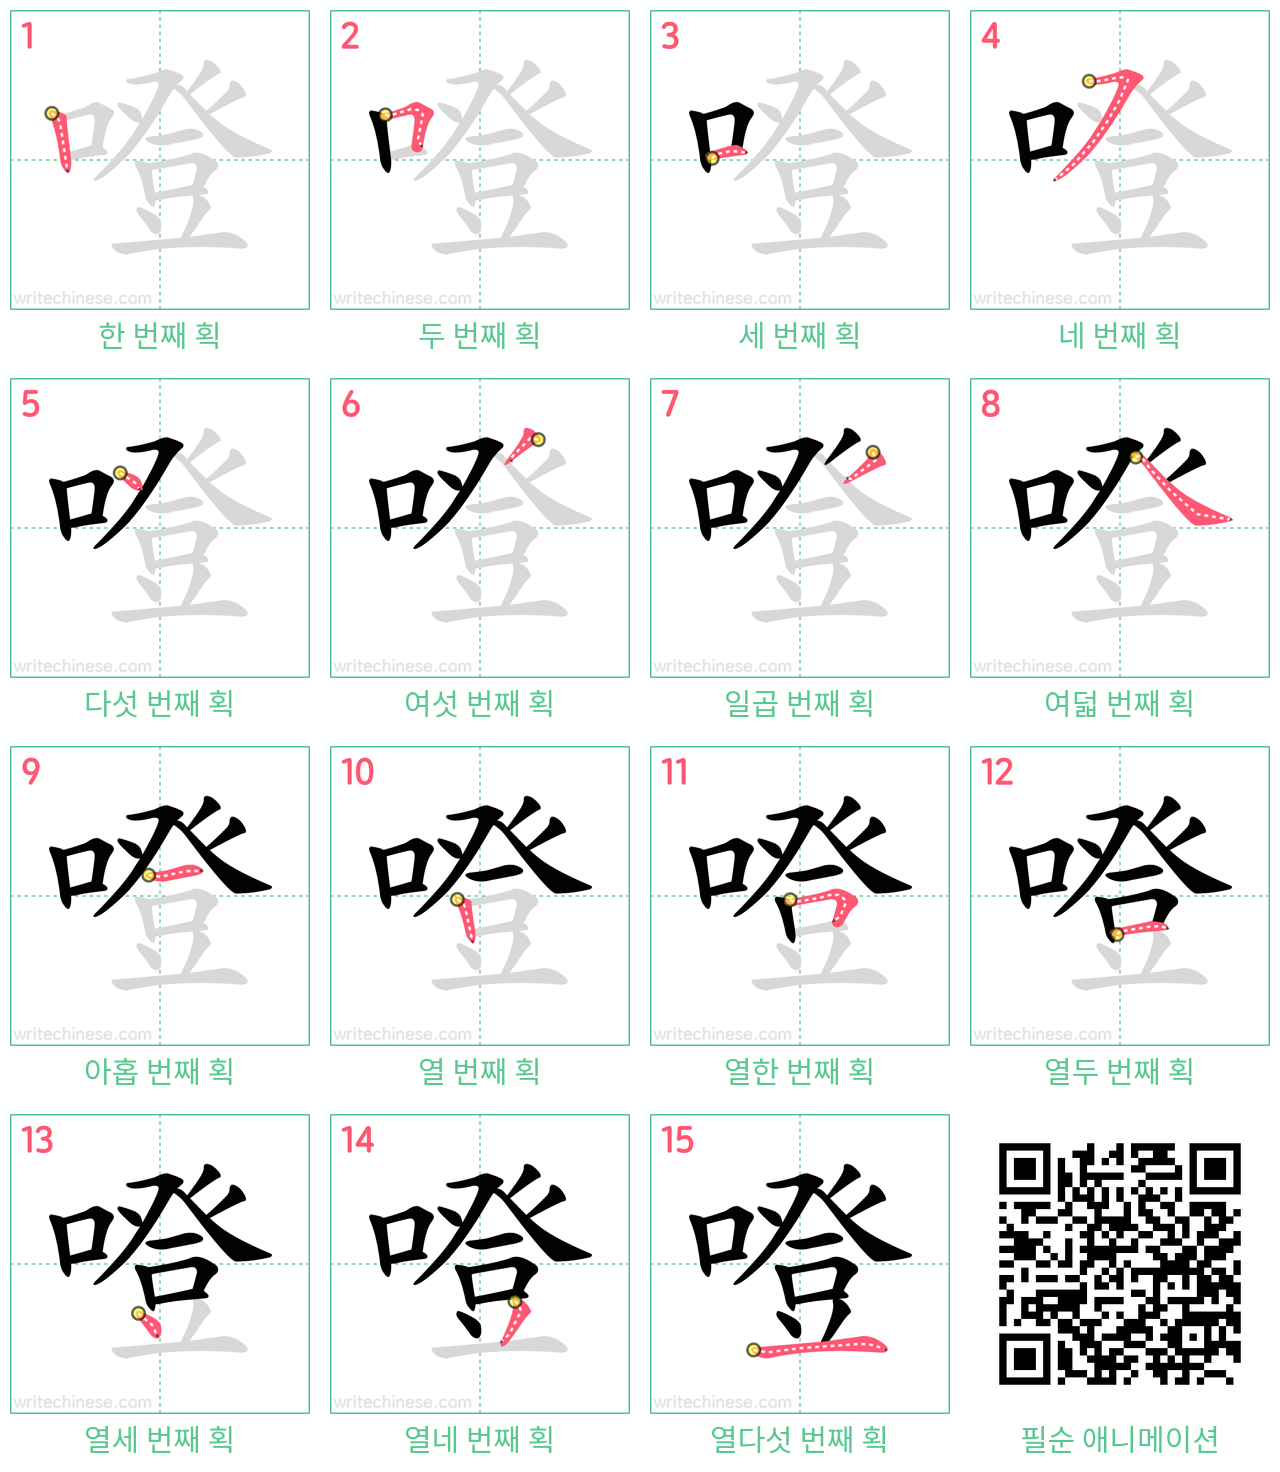 噔 step-by-step stroke order diagrams